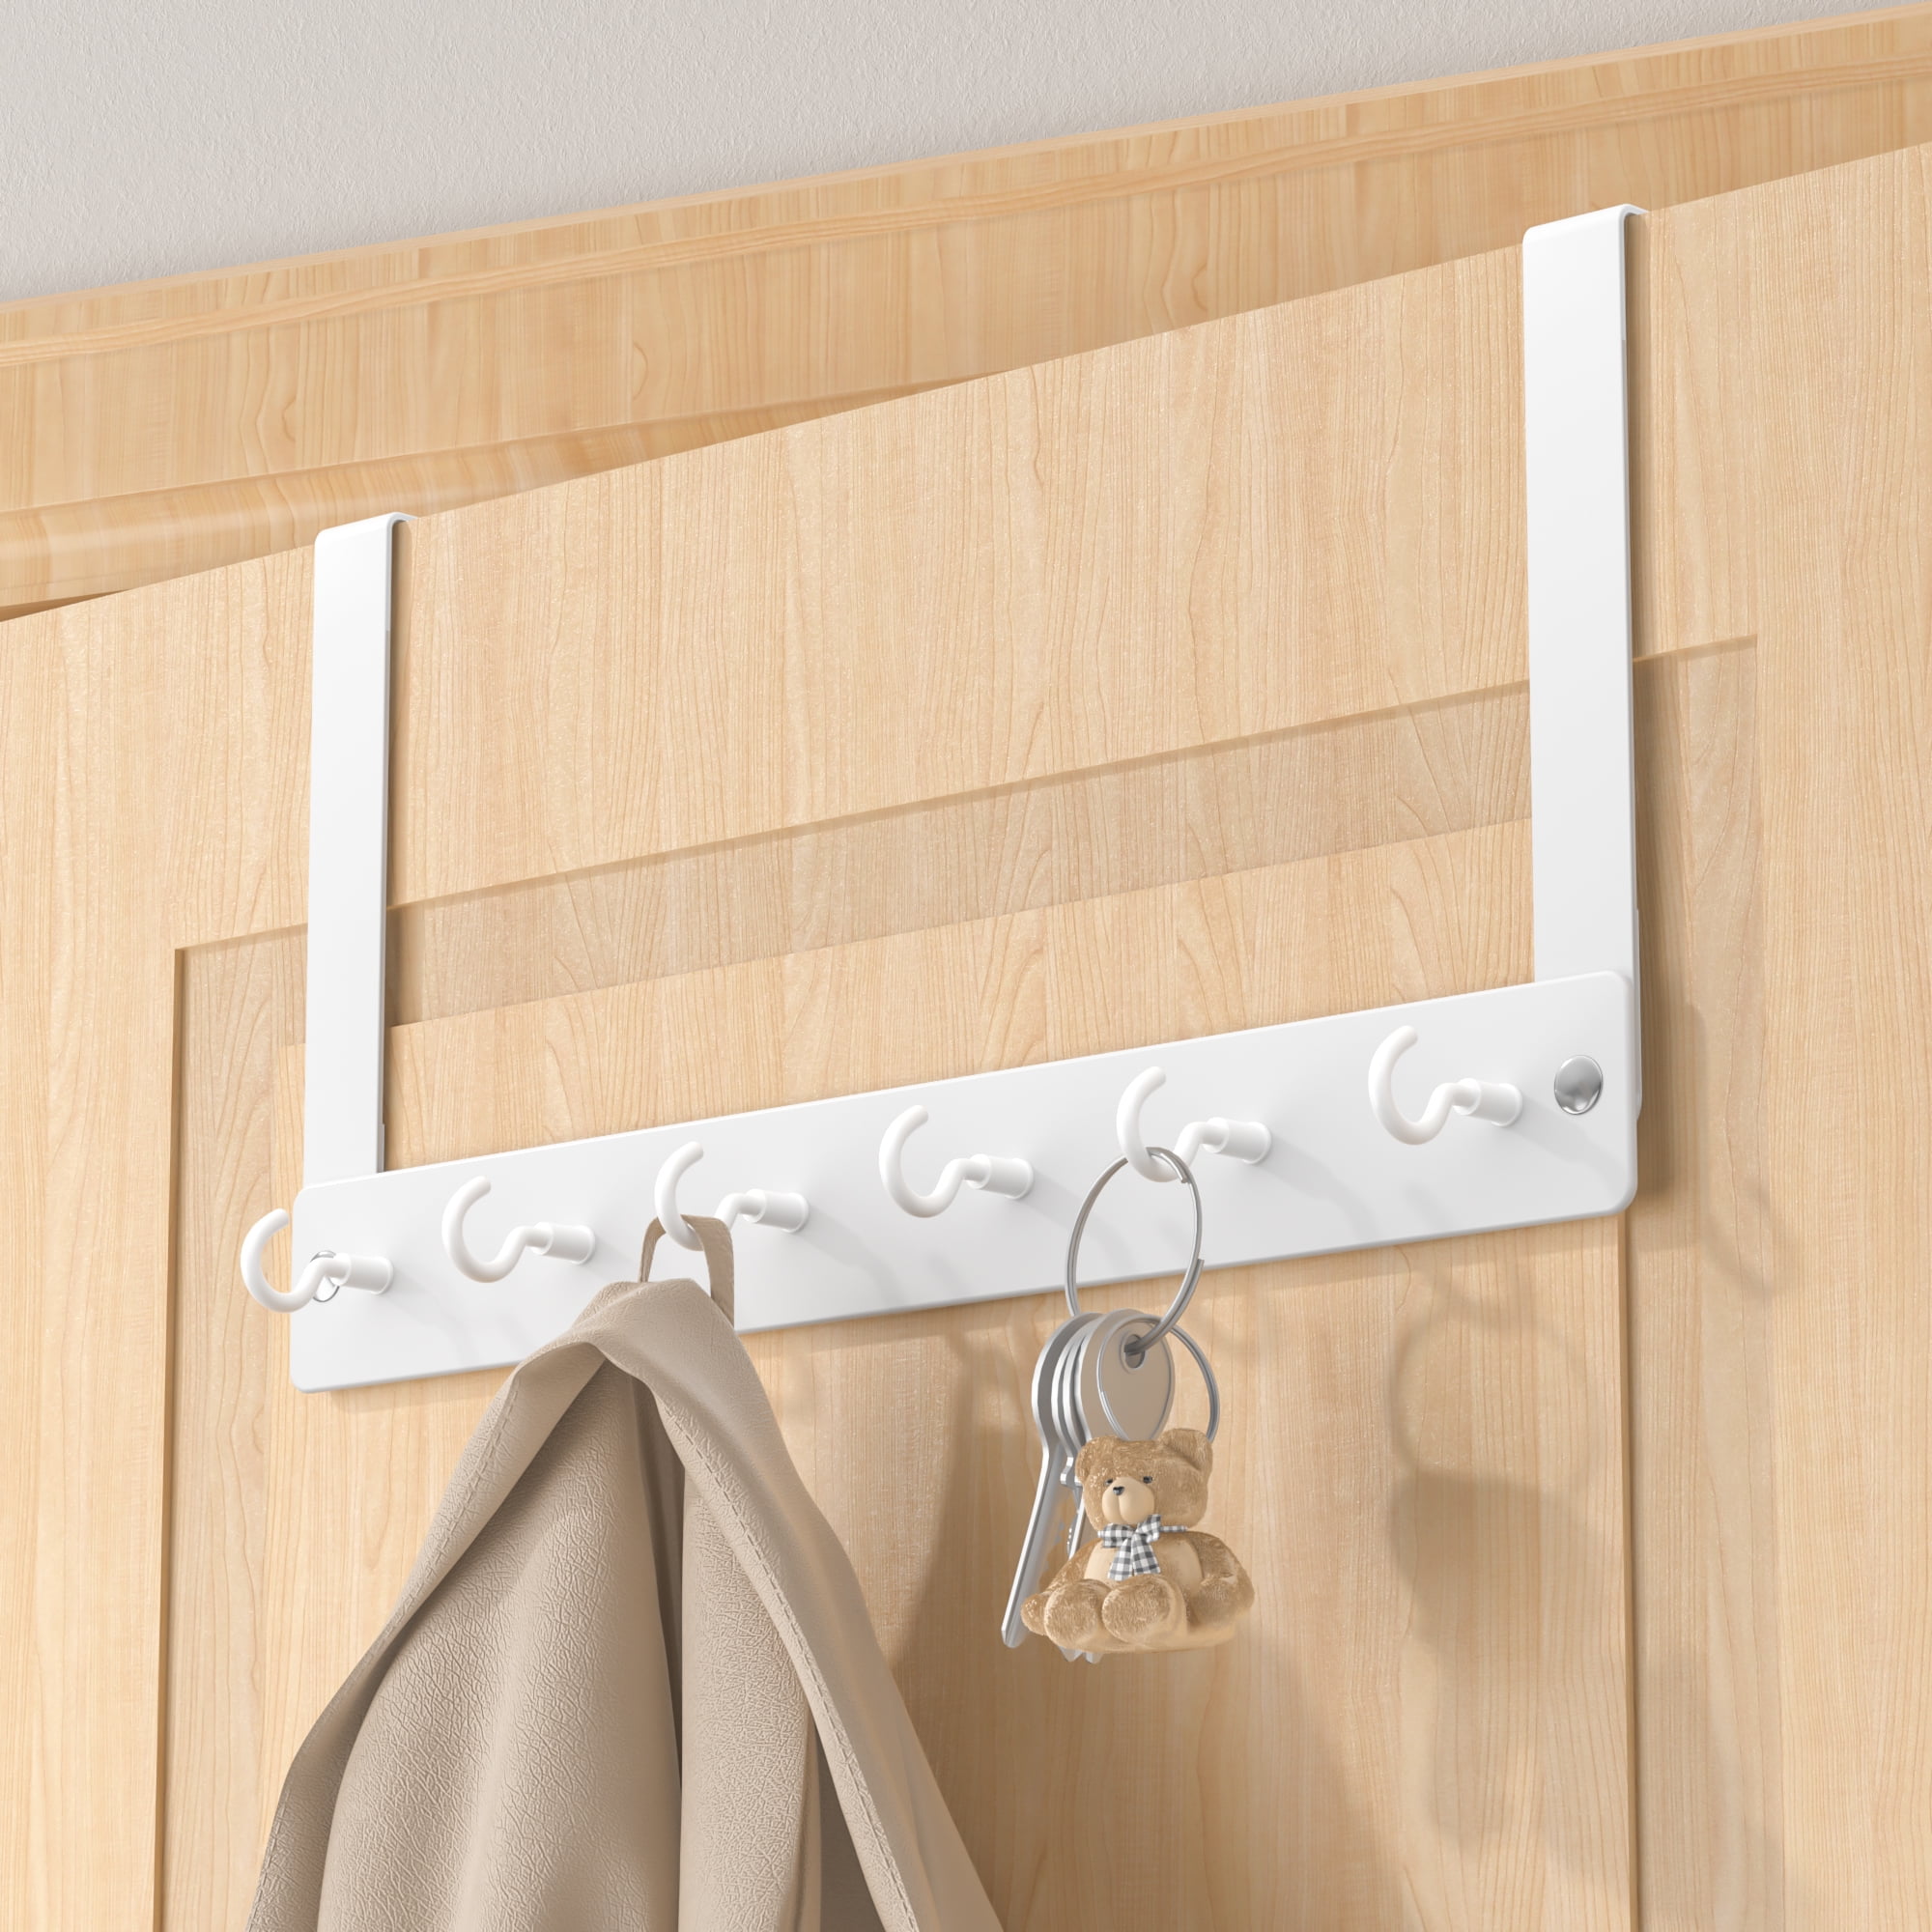 Foraineam 16-Pack Over-The-Door Hooks Fits 1-3/8 Door Vinyl Coated  Stainless Steel Door Hook Hangers